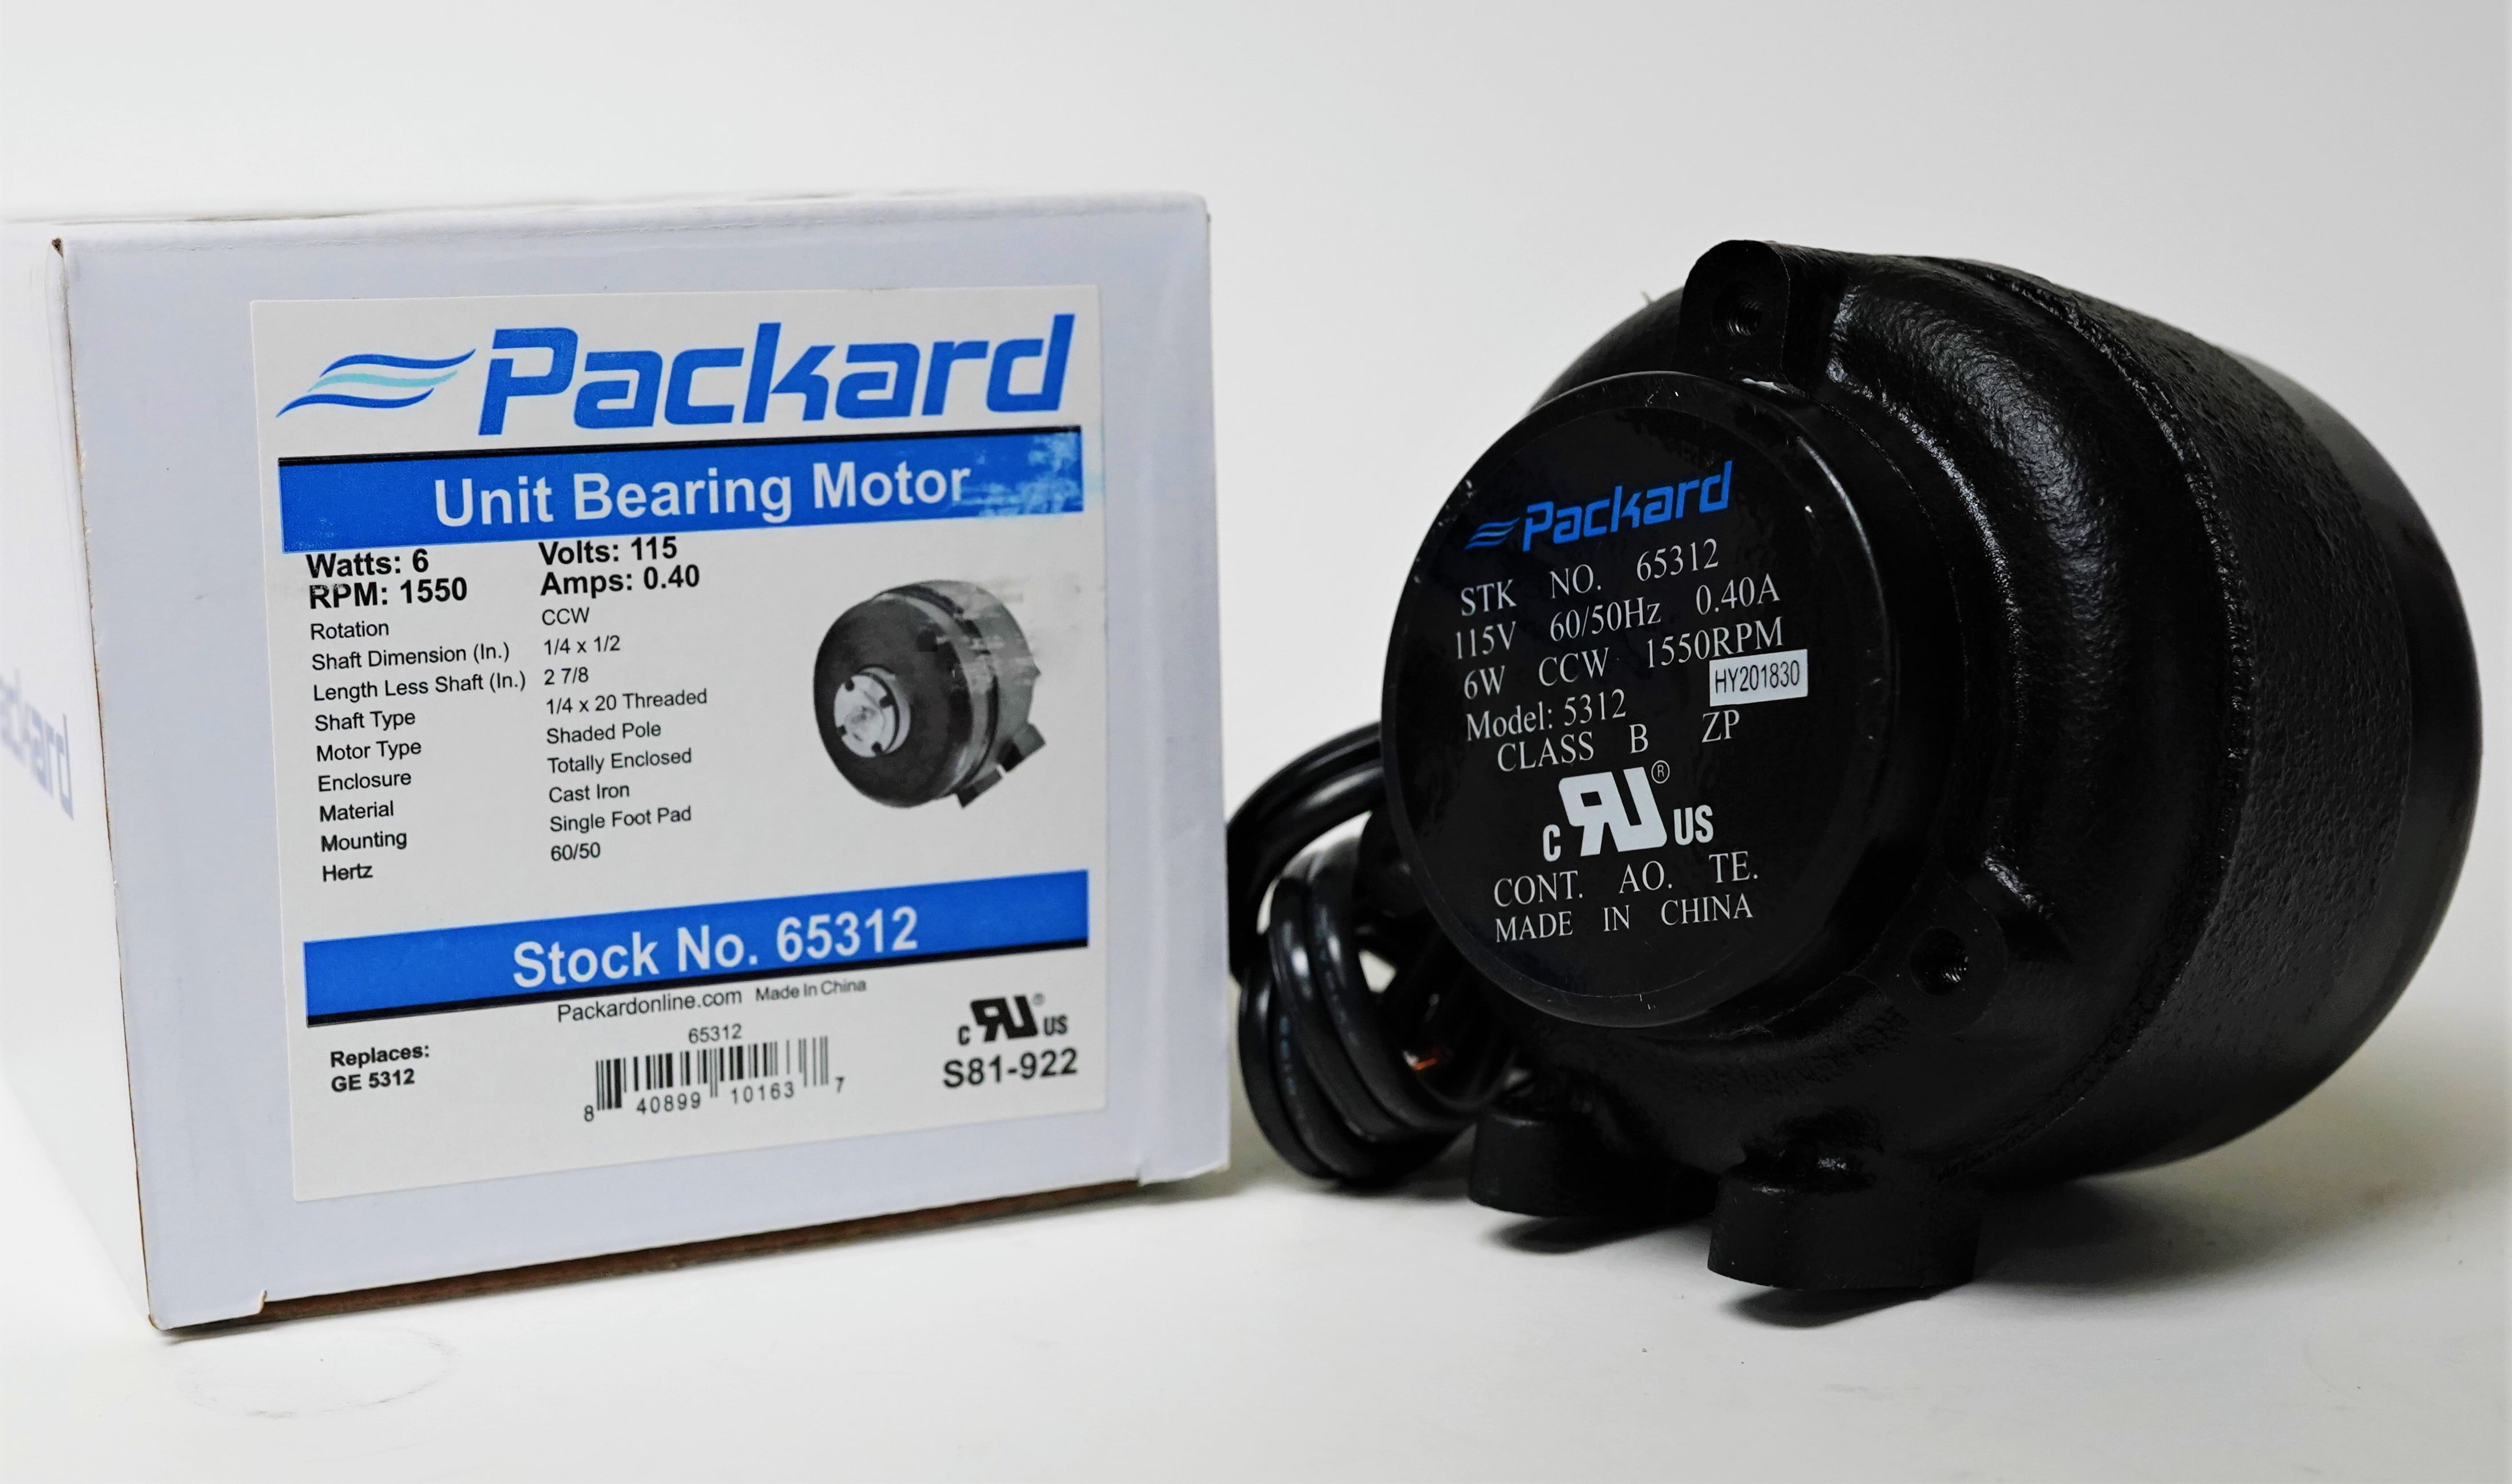 GE Packard 4 Watt Cast Iron Unit Bearing Motor Cw 5211 By Packard 